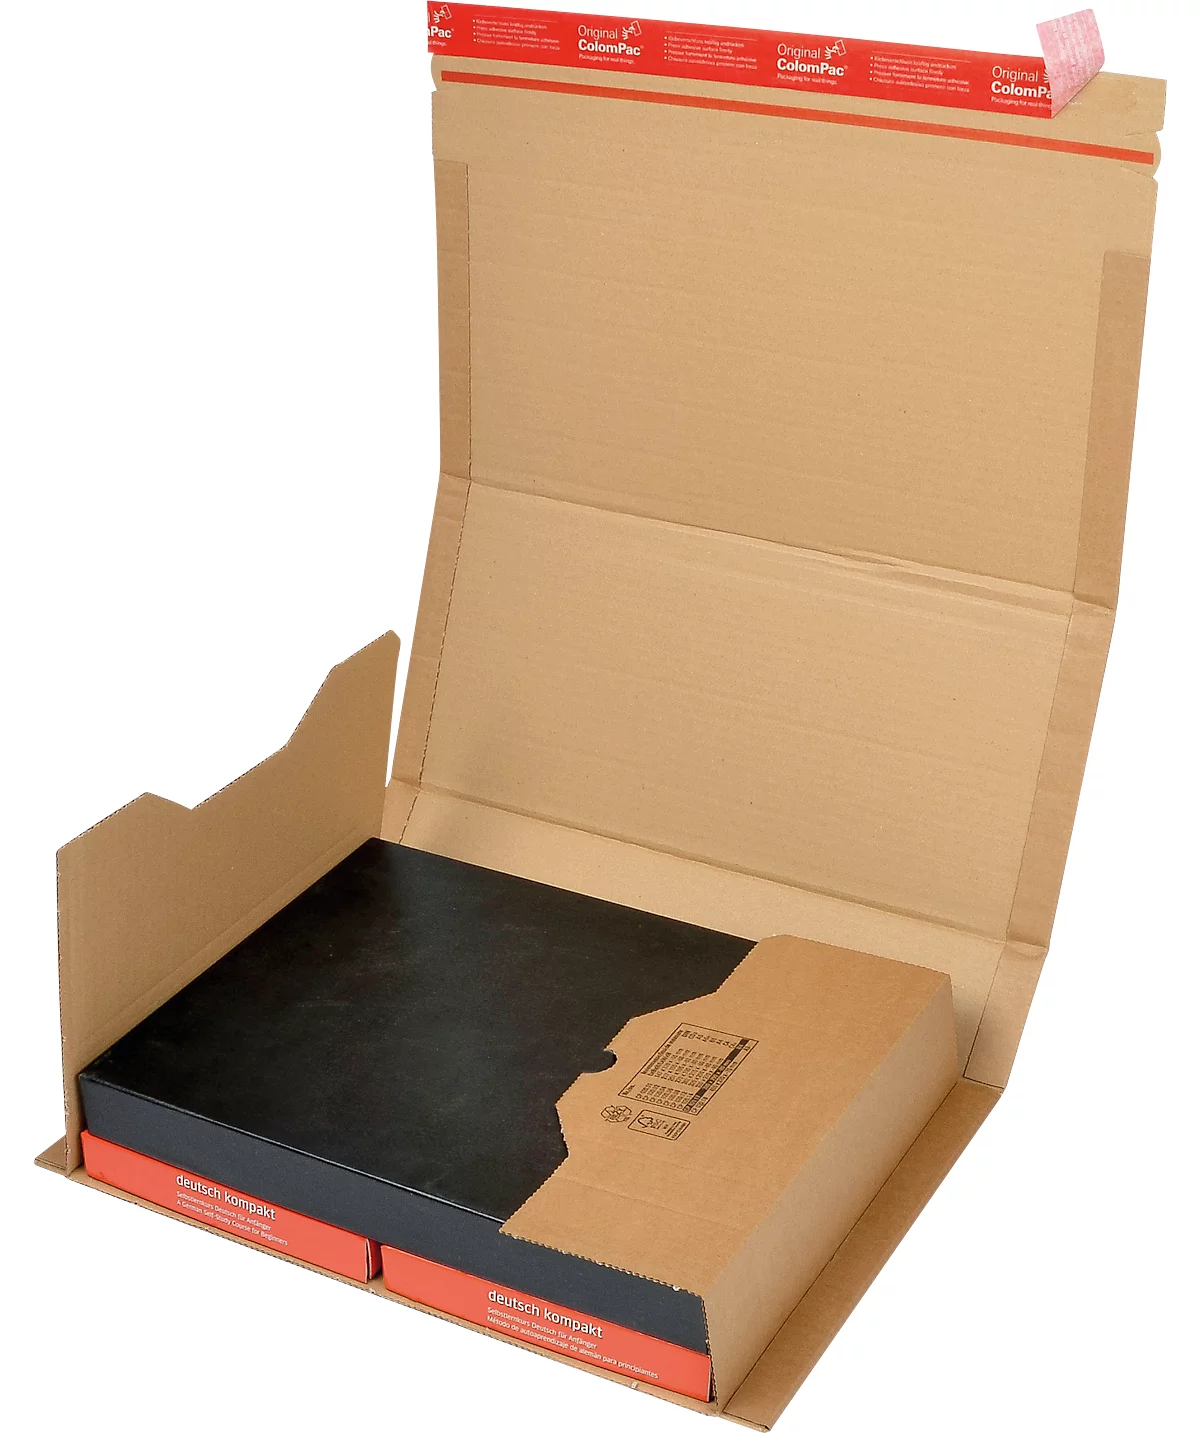 Embalaje envolvente ColomPac CP 020, con precinto autoadhesivo, cartón ondulado, marrón, An 430 x Pr 300 x Al 100 mm (B4), 20 uds.